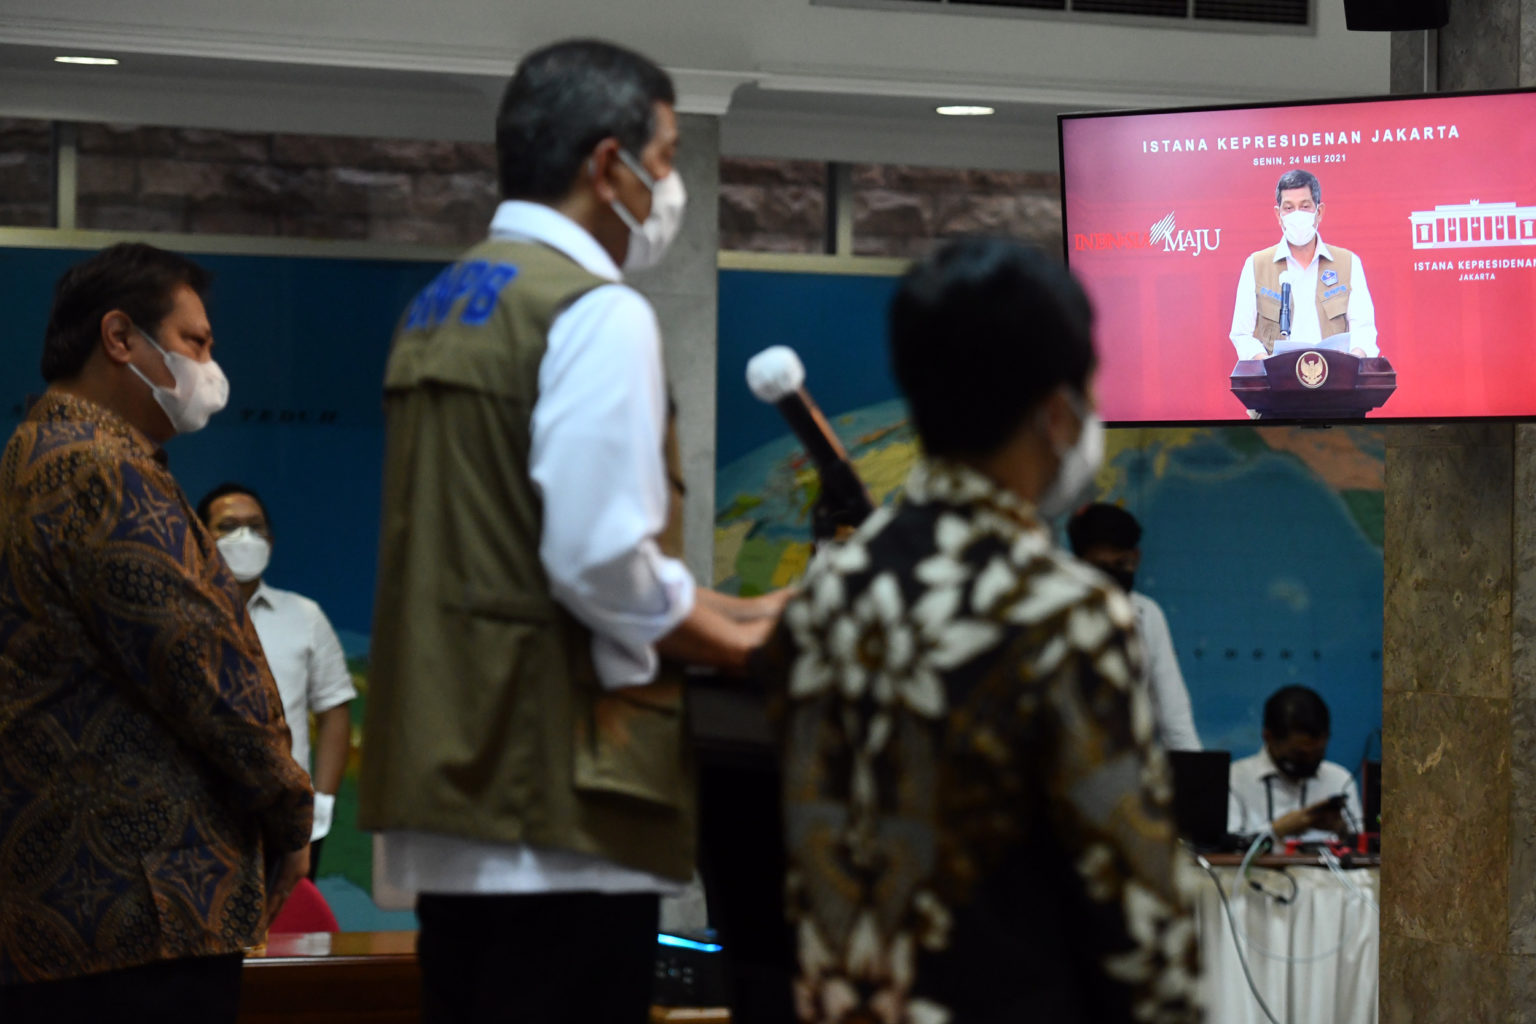 Ketua KPCPEN Airlangga Hartarto, Ketua Satgas Penanganan COVID-19 Doni Monardo dan Wamenkes Dante Saksono Harbuwono memberikan keterangan pers usai mengikuti Rapat Terbatas mengenai Penanganan Pandemi COVID-19 yang dipimpin oleh Presiden RI Joko Widodo (Jokowi), Senin (24/05/2021), di Jakarta. (Foto: Humas Setkab/Rahmat)